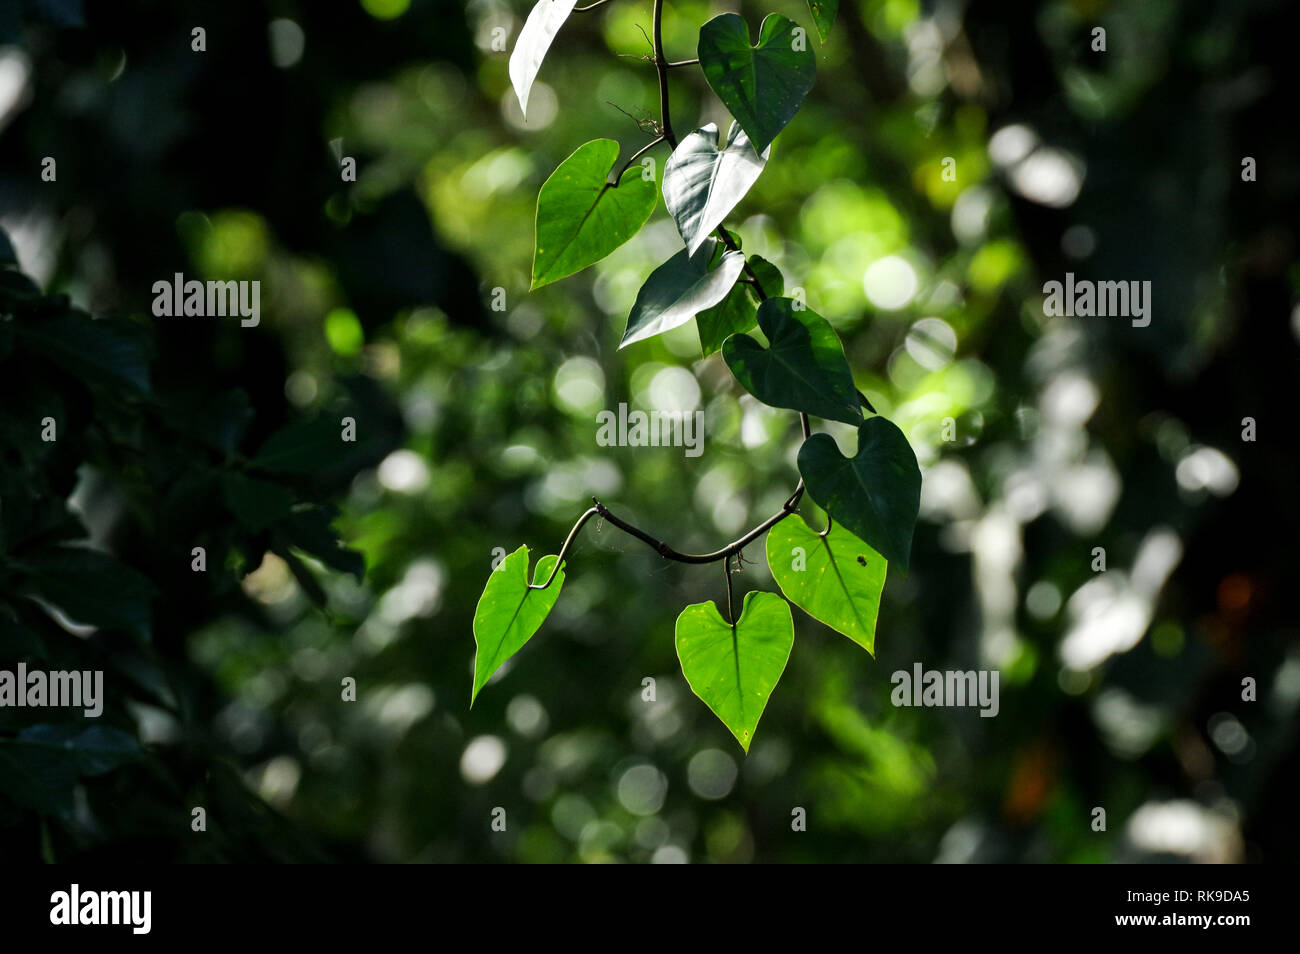 heart screen - PlatinA Forest